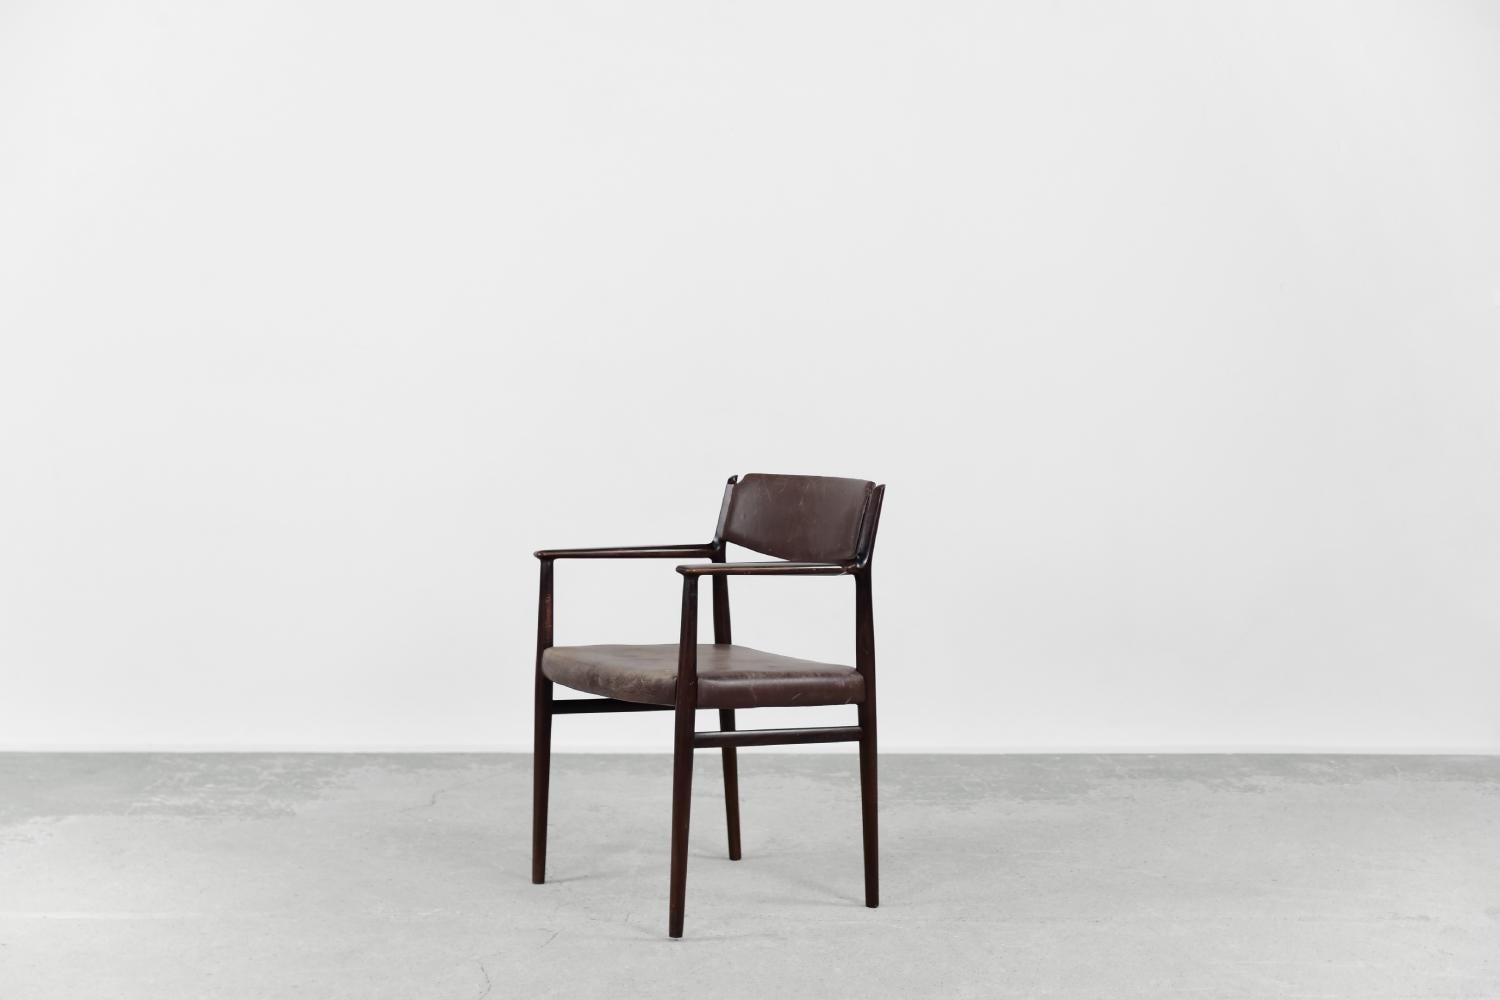 Dieser modernistische Stuhl wurde in den 1960er Jahren von dem weltberühmten dänischen Designer Arne Vodder entworfen. Das organisch geformte Gestell des Stuhls ist aus Massivholz in einem edlen, braunen Farbton gefertigt. Der Sitz und die